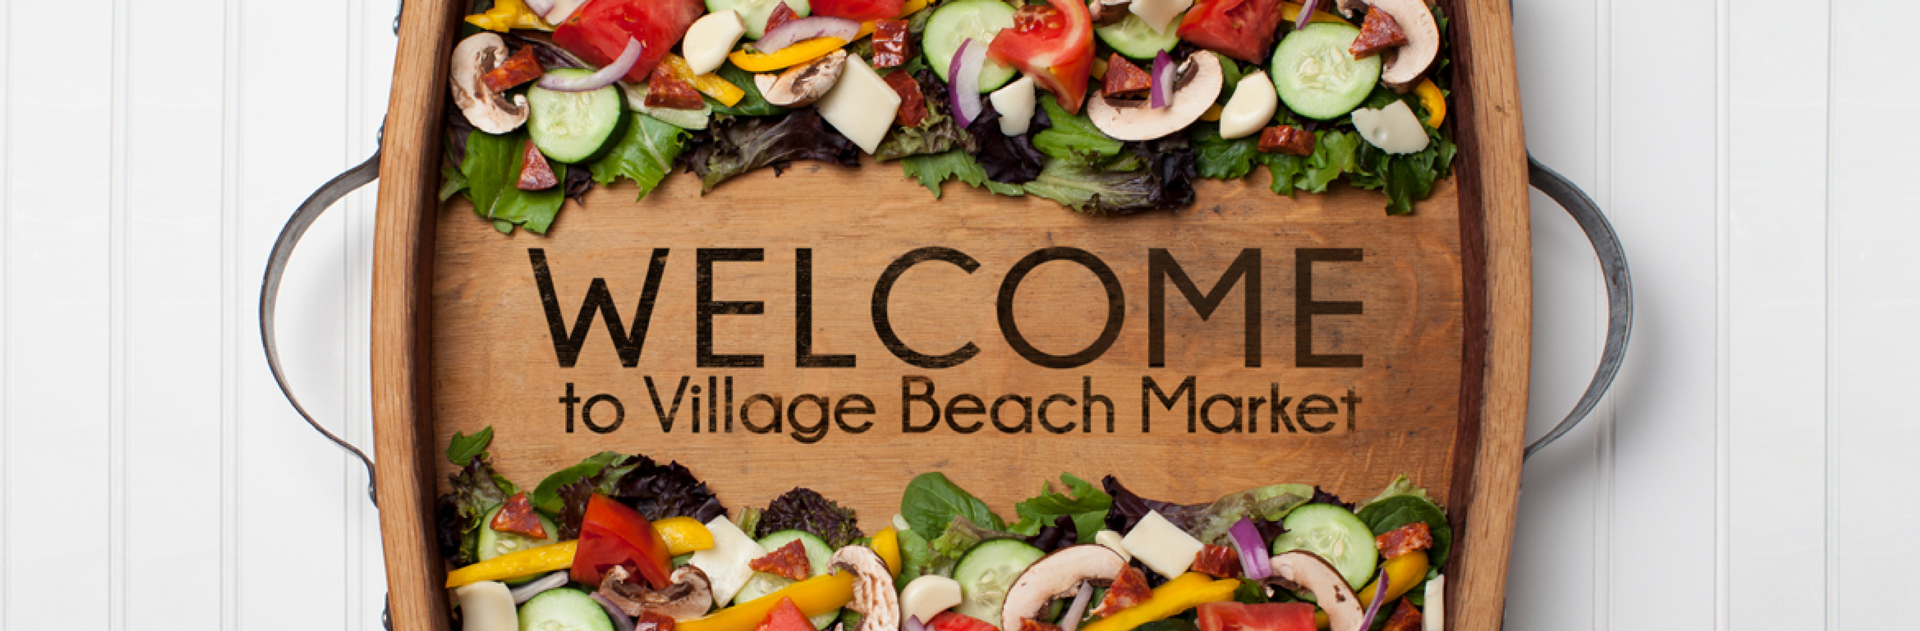 Welcome to village beach market